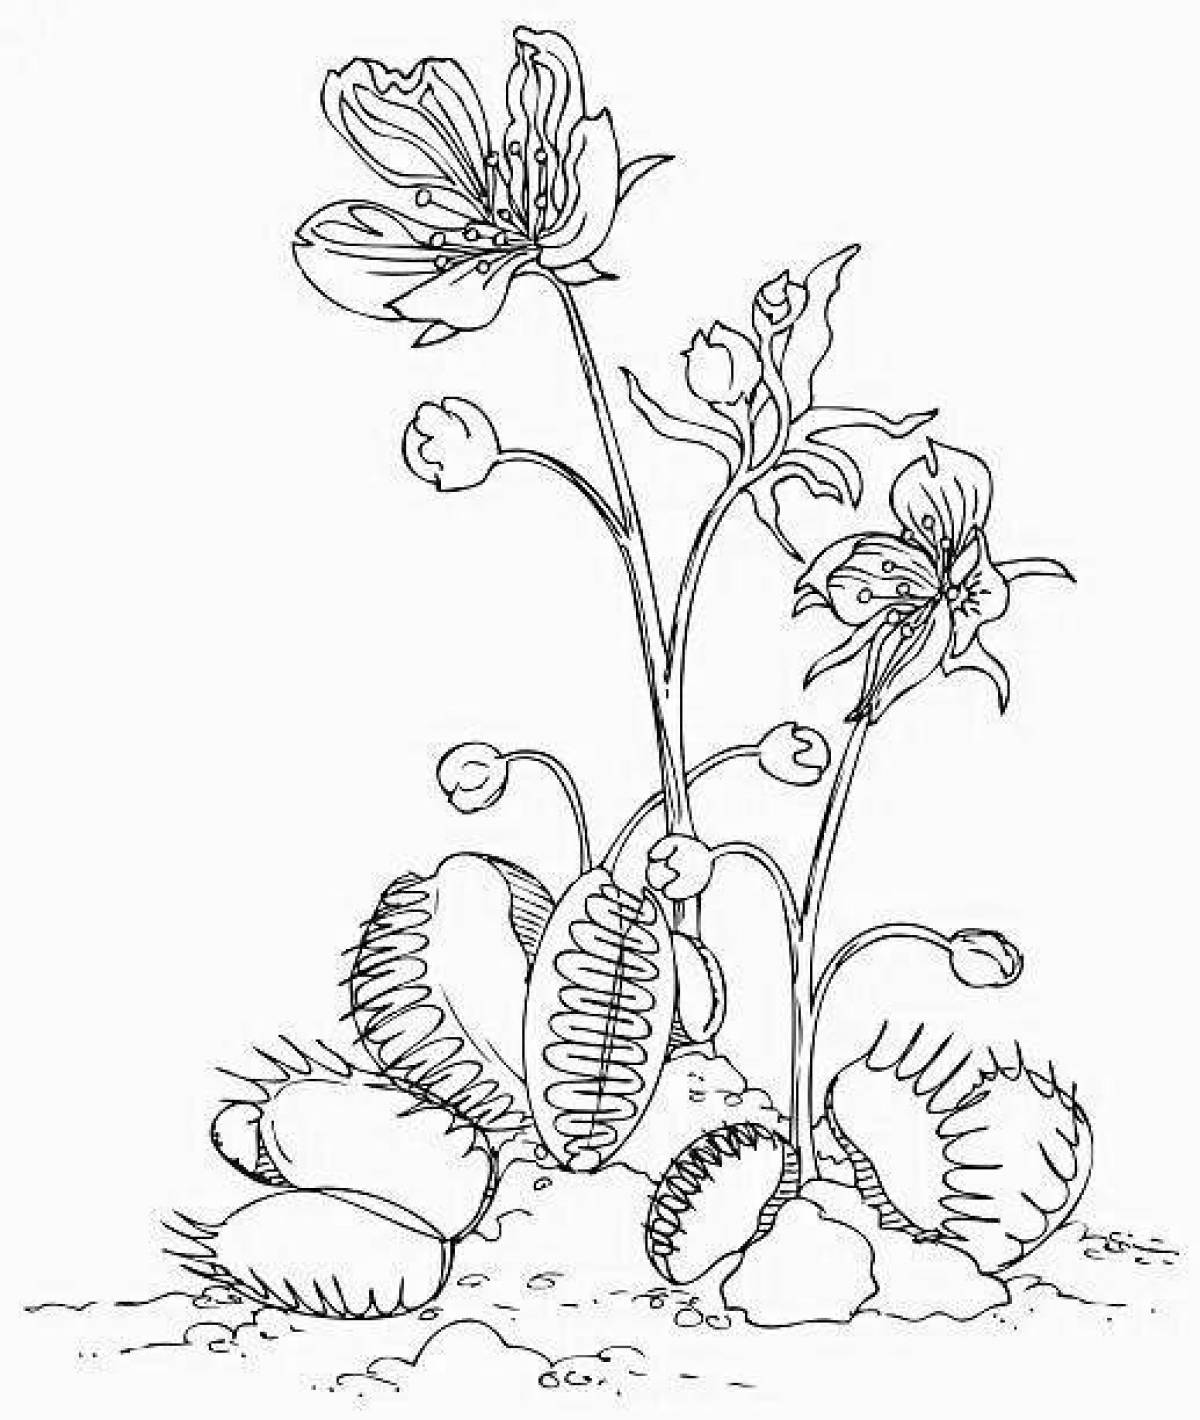 Adorable venus flytrap coloring page